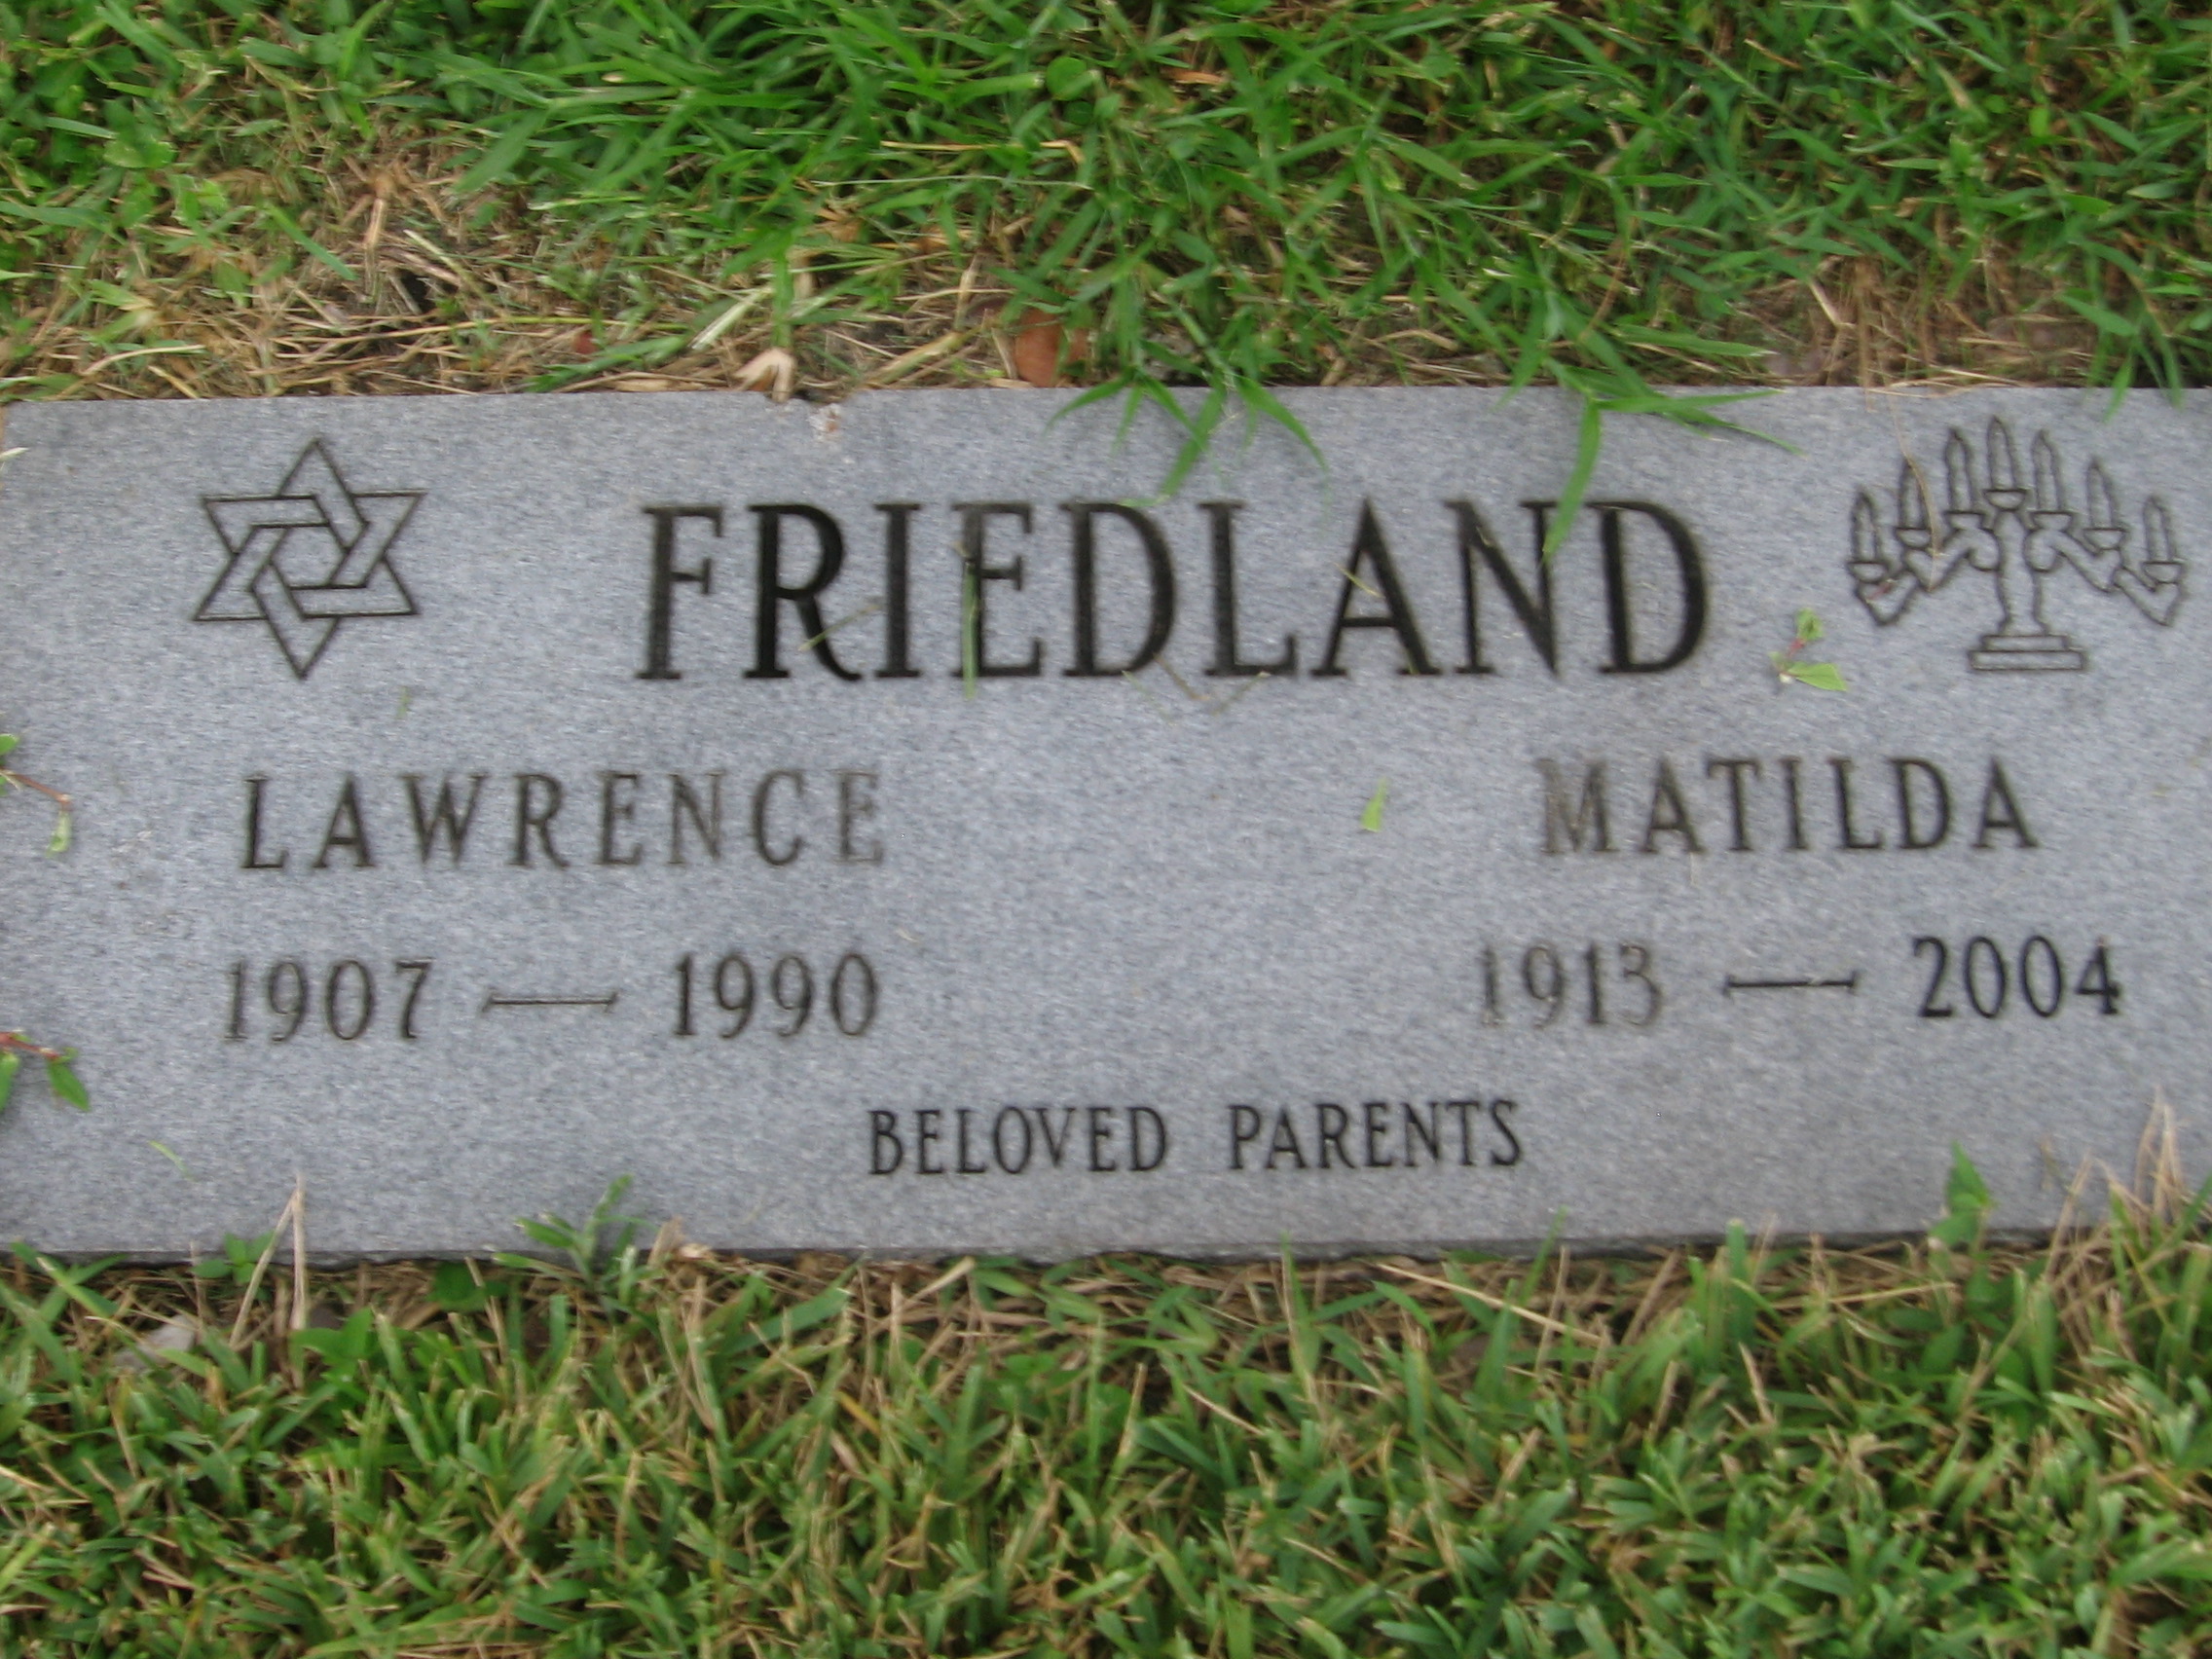 Lawrence Friedland